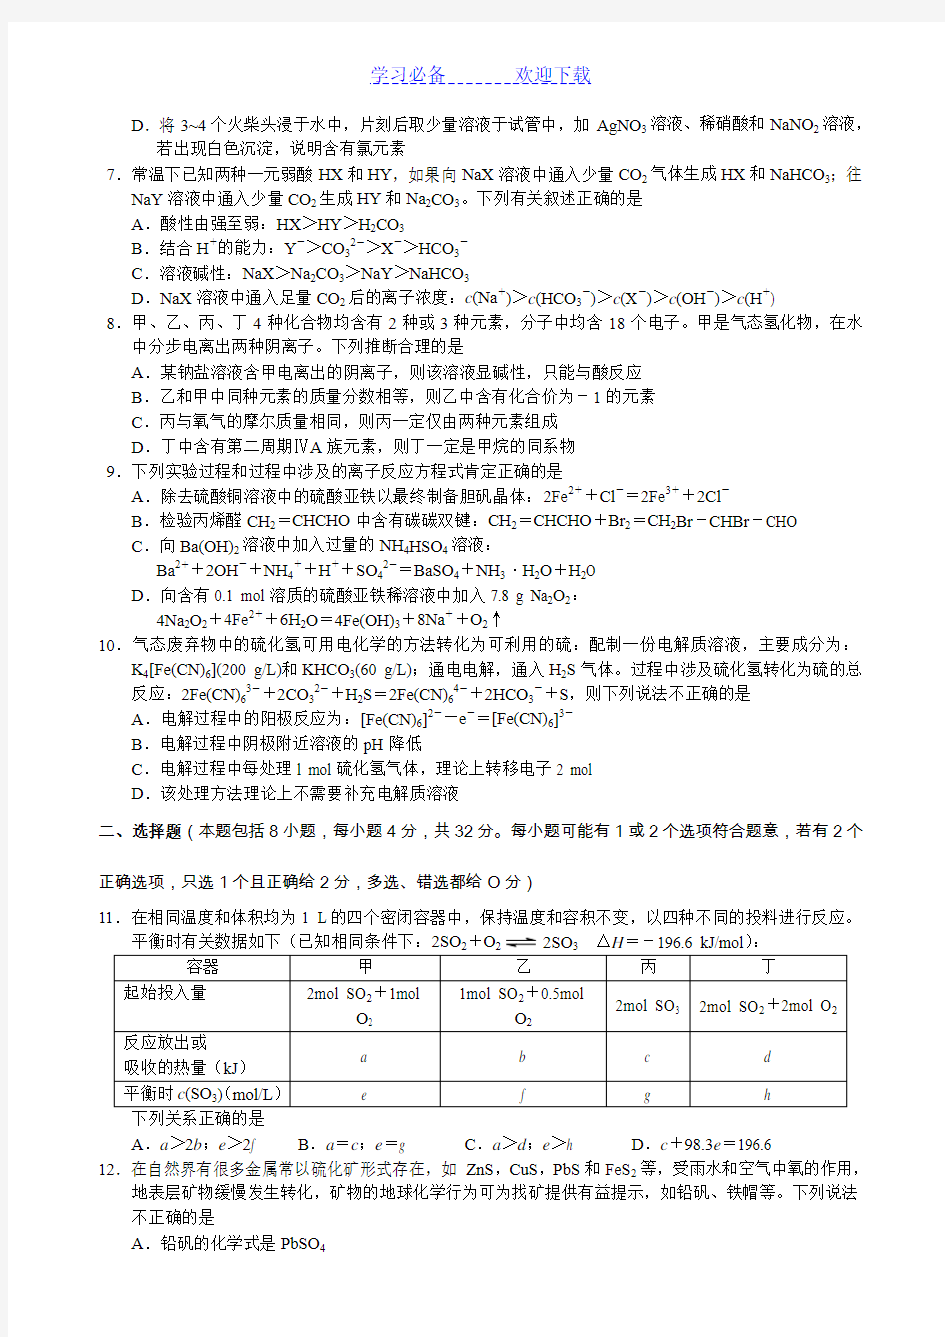 浙江省高中学生化学竞赛试题及答案与评分标准(纯WORD版)